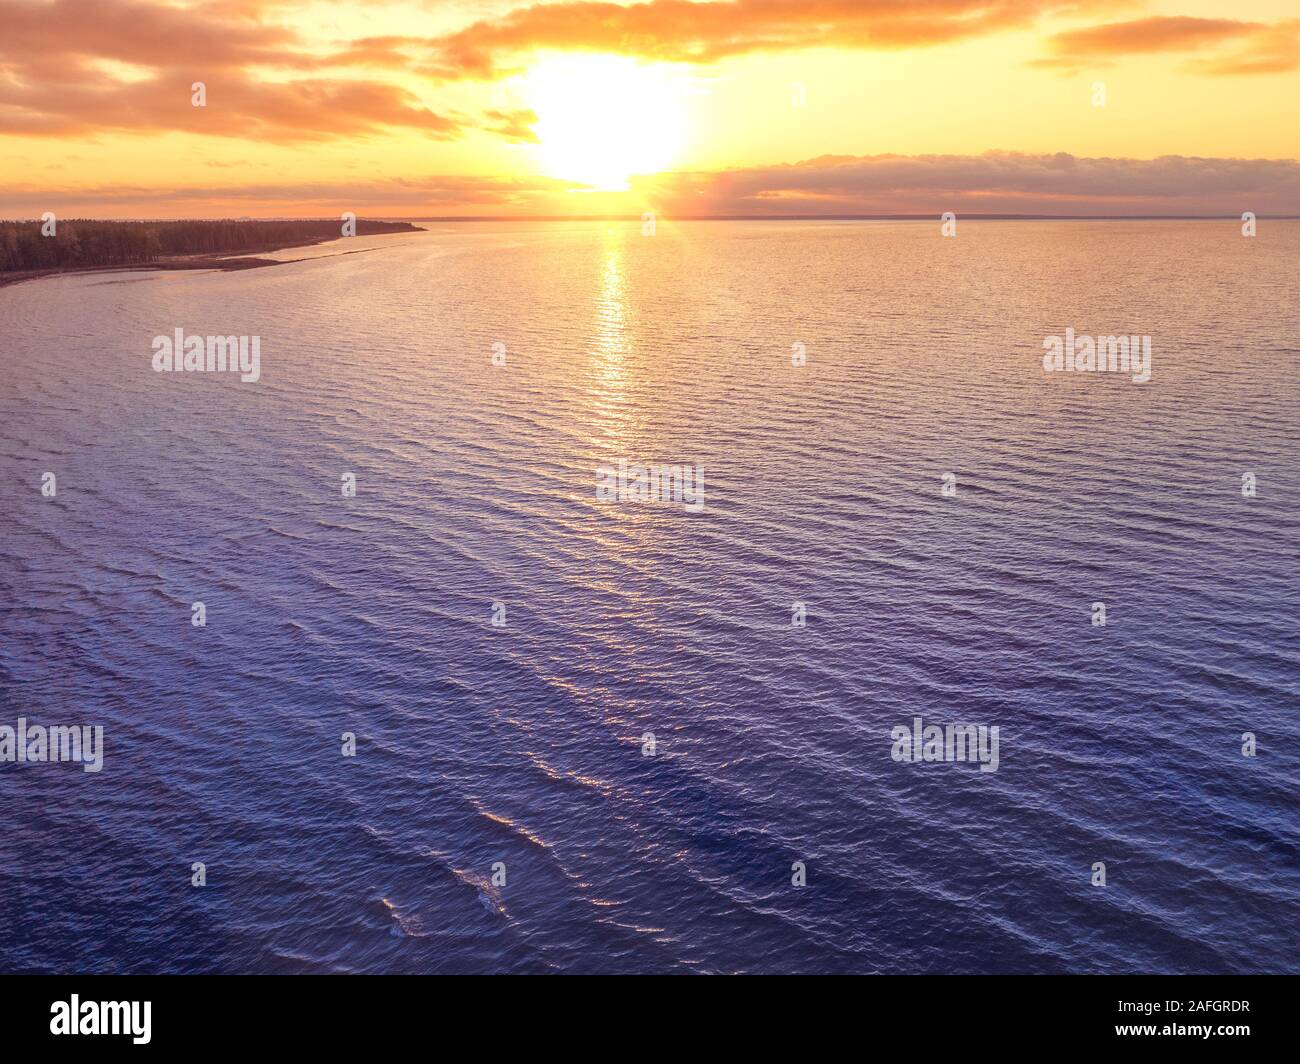 Il tramonto sul mare. Paesaggio di mare in serata. Bel tramonto con cielo drammatico. Vista aerea Foto Stock